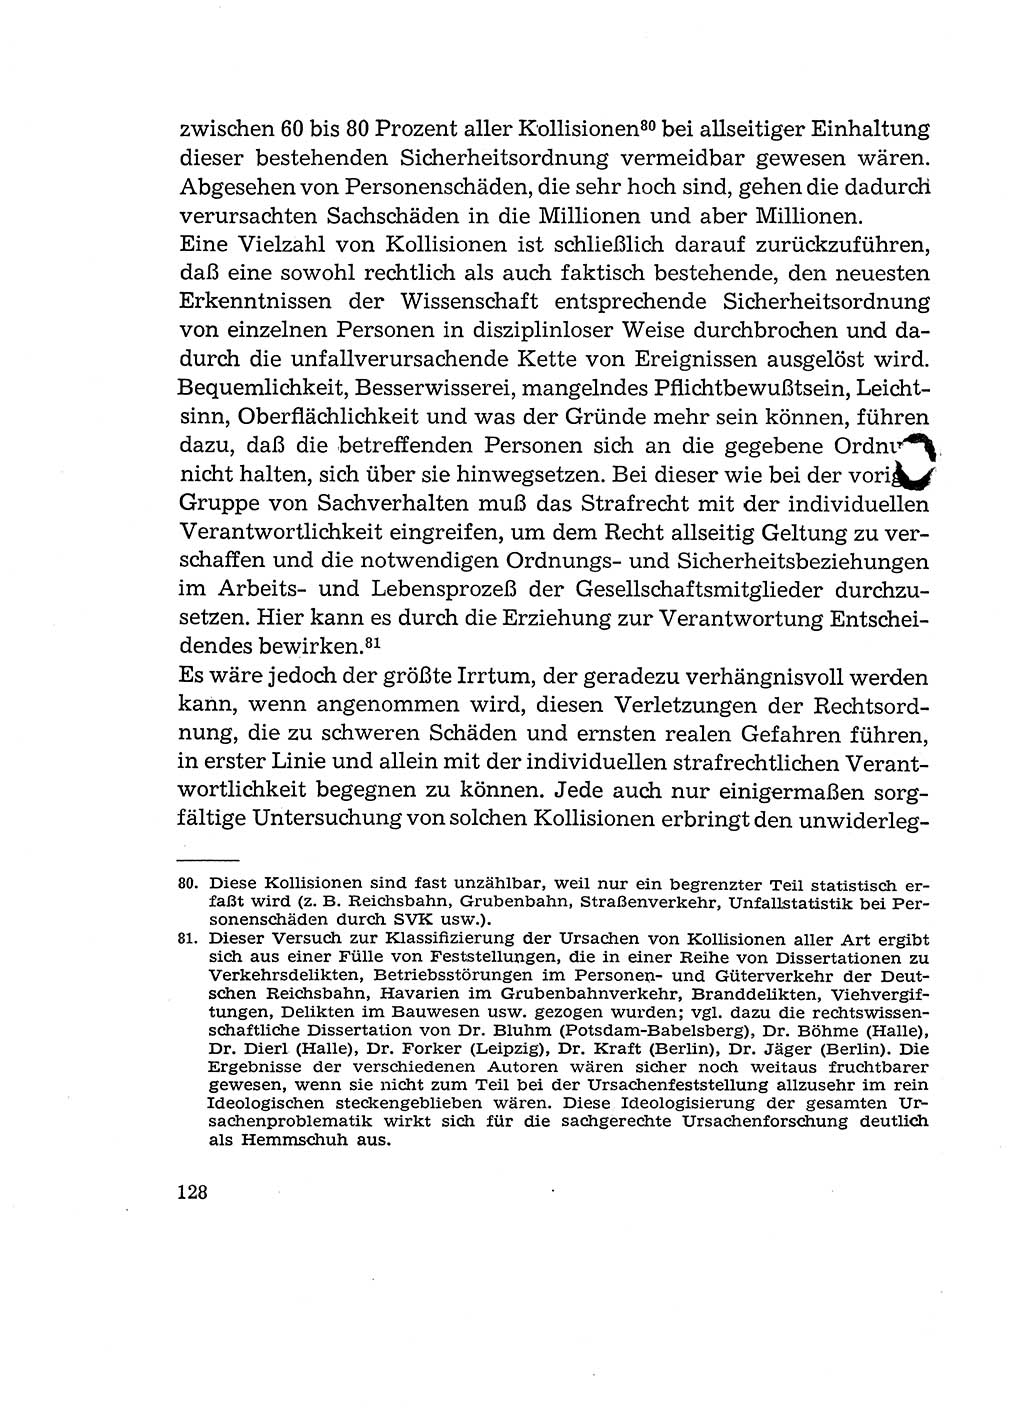 Verantwortung und Schuld im neuen Strafgesetzbuch (StGB) [Deutsche Demokratische Republik (DDR)] 1964, Seite 128 (Verantw. Sch. StGB DDR 1964, S. 128)